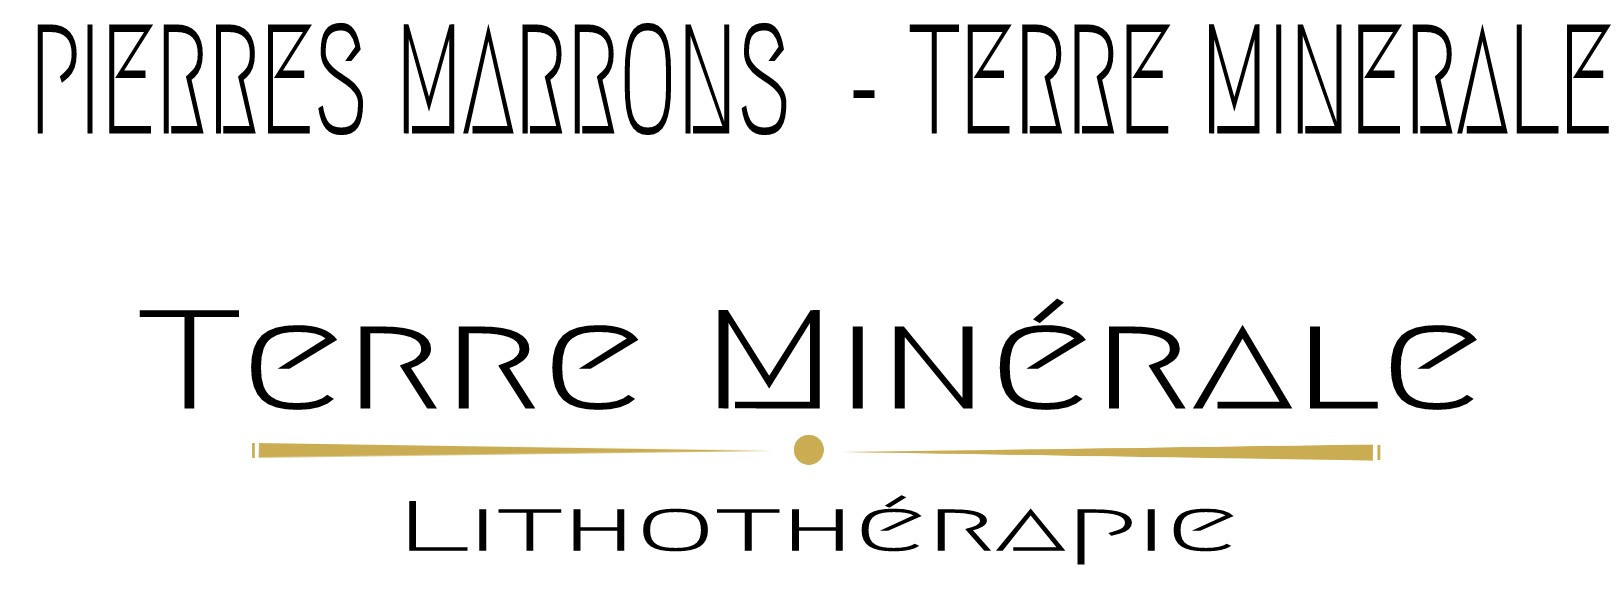 PIERRES MARRONS  - TERRE MINERALE